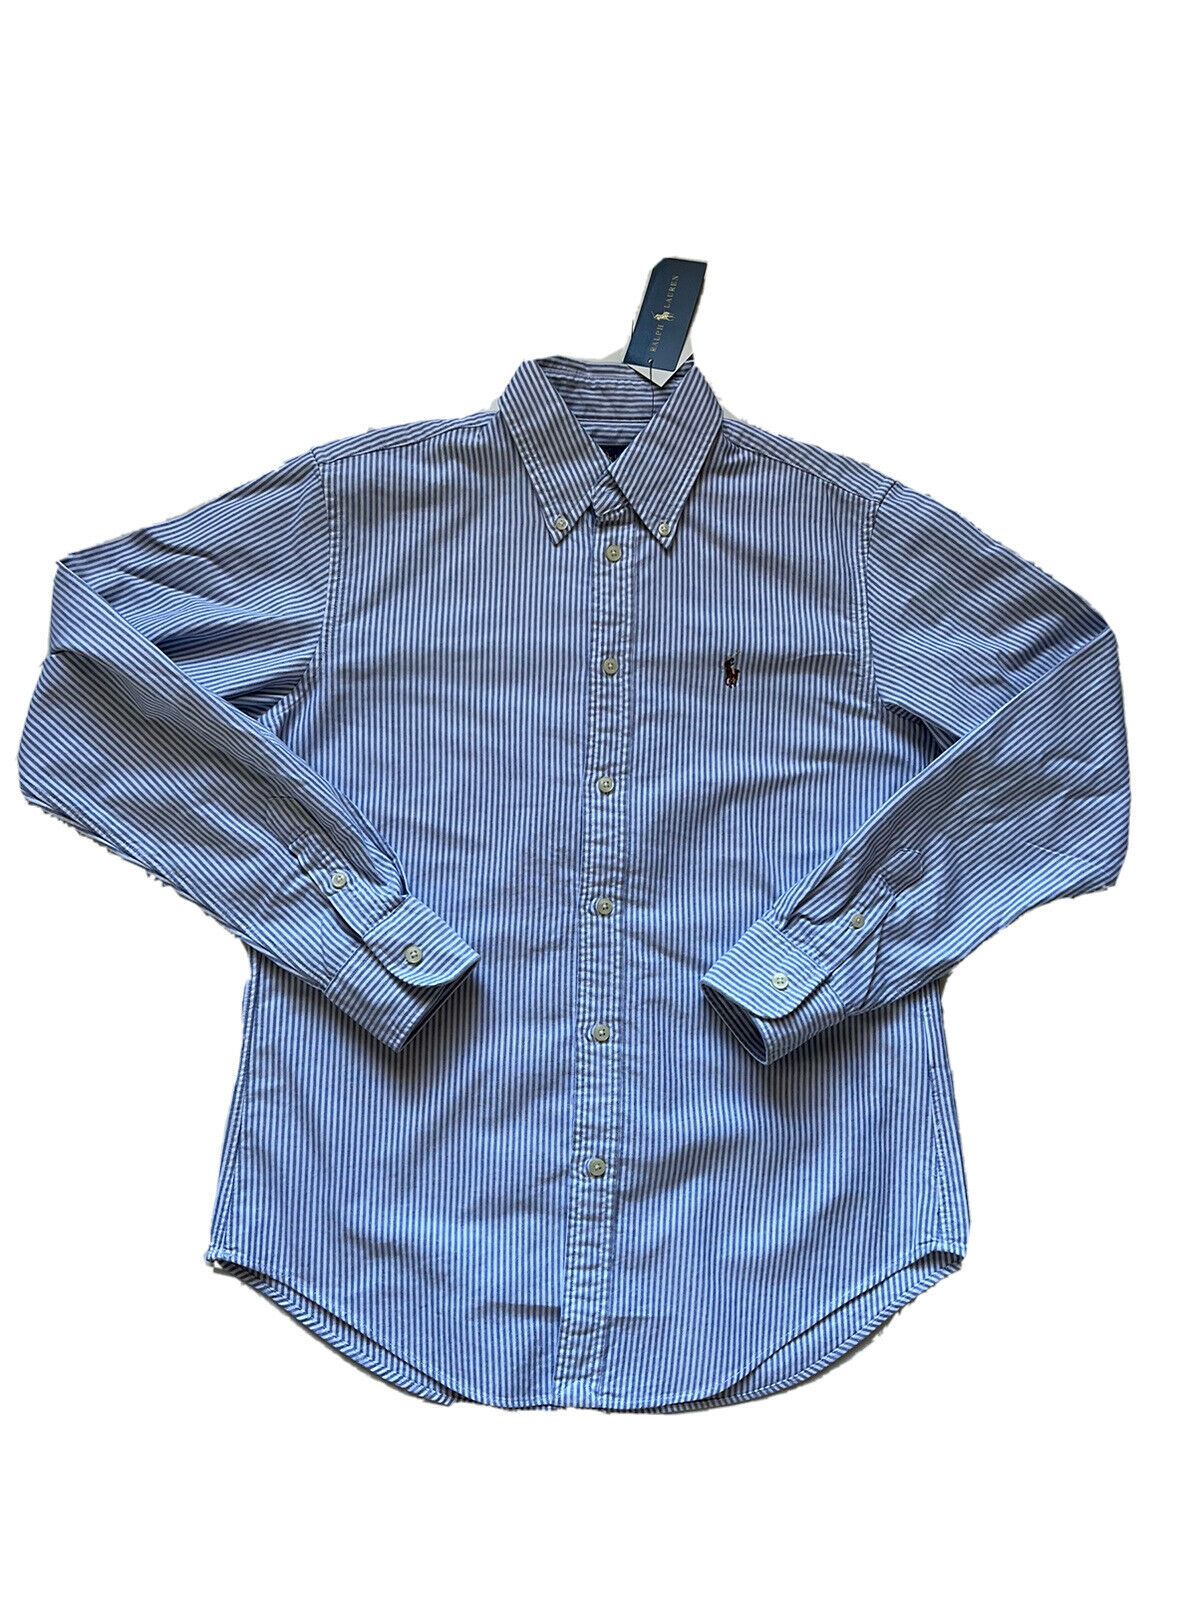 NWT $89 Ralph Lauren Мужская классическая рубашка классического кроя в бело-синюю полоску, маленькая